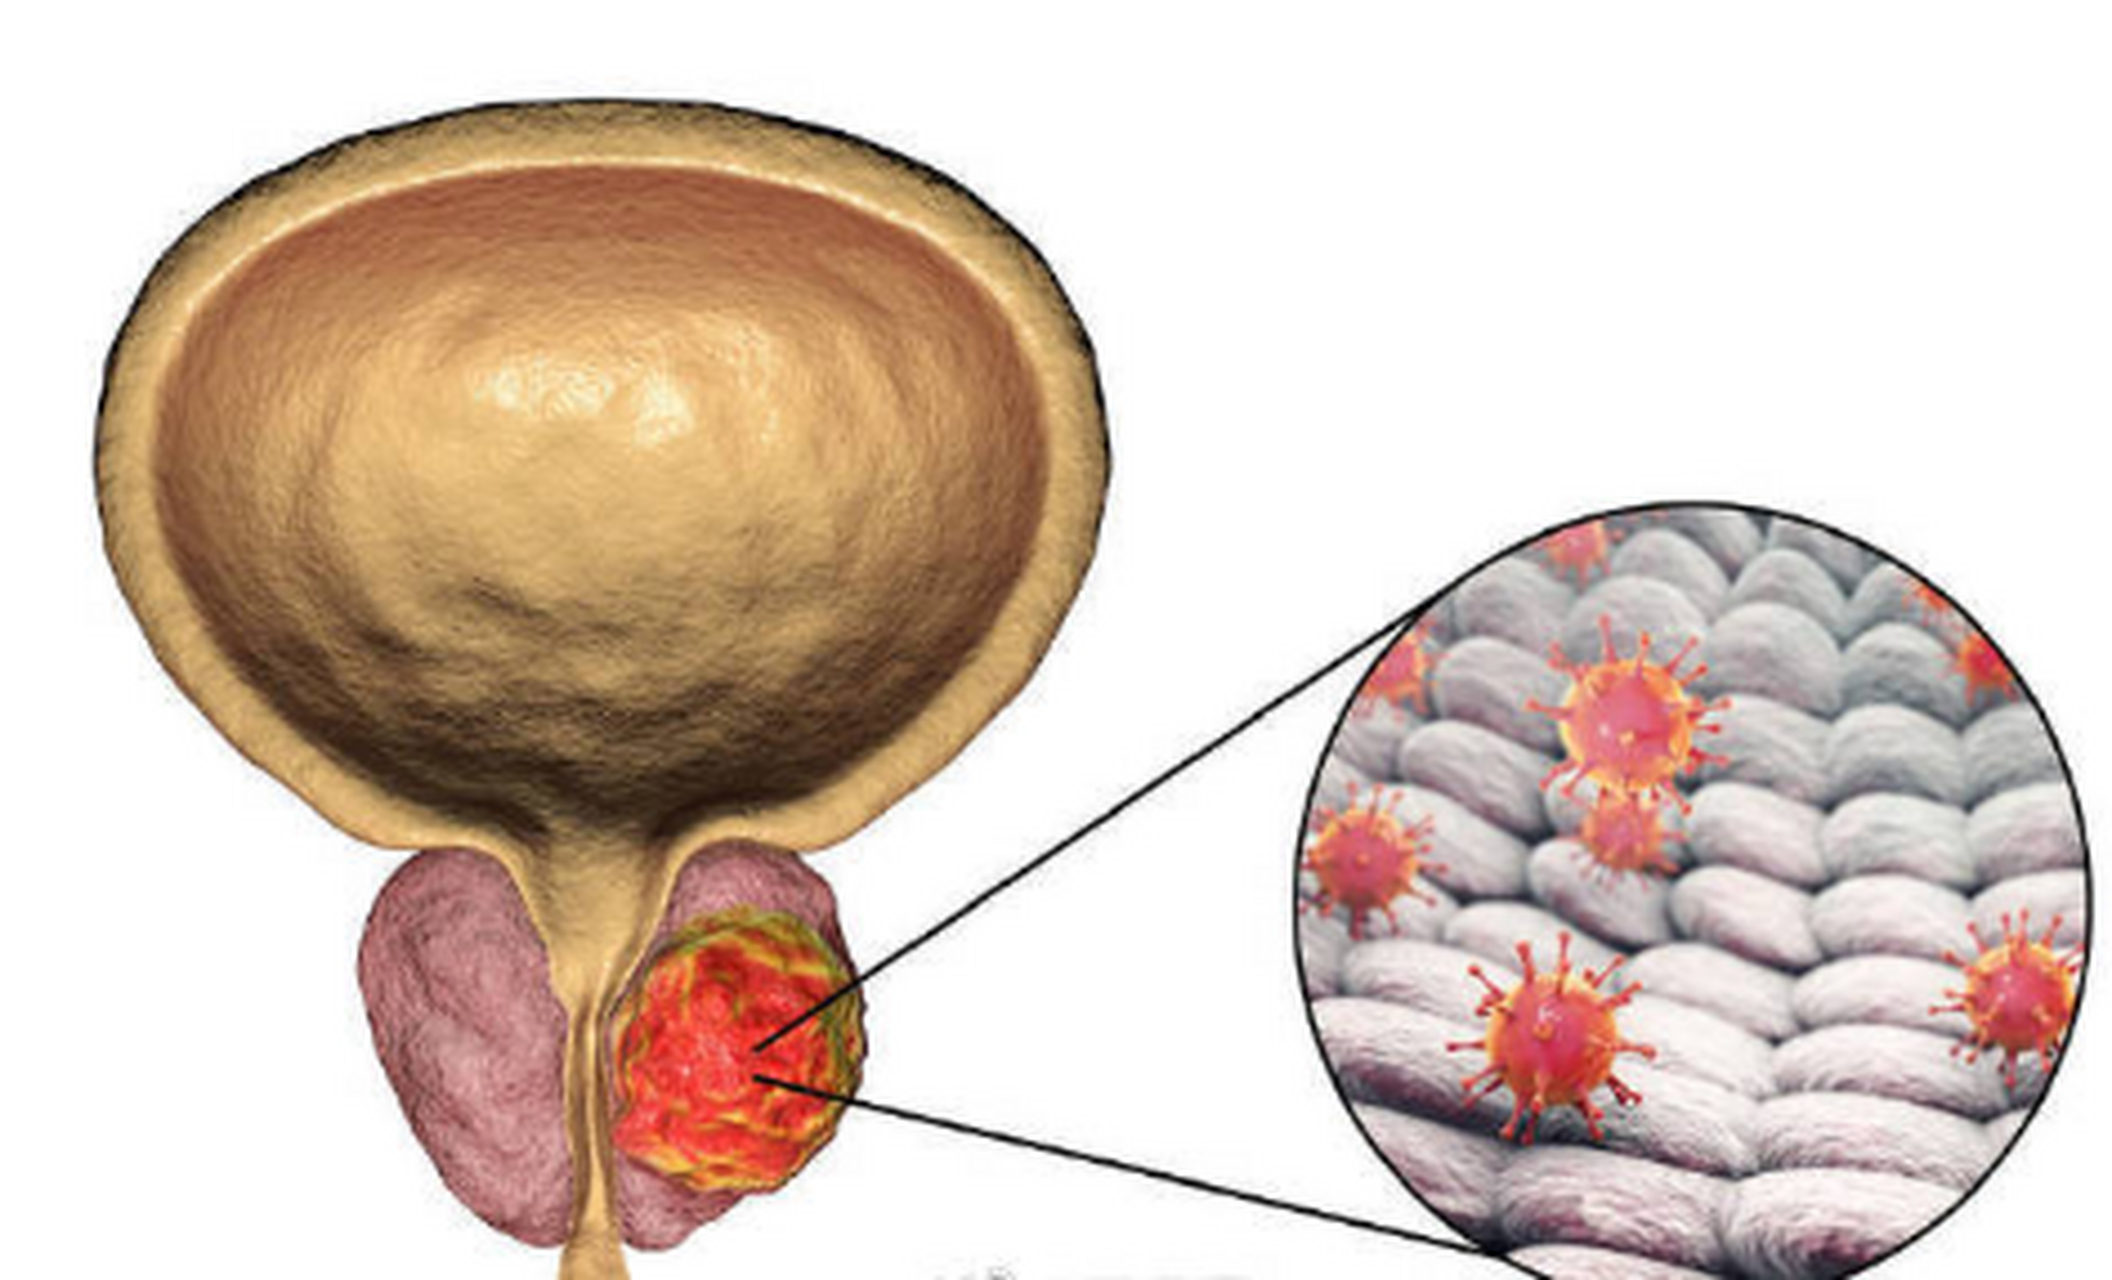 前列腺钙化是怎么发生的?它有什么表现?出现这种问题怎么办?